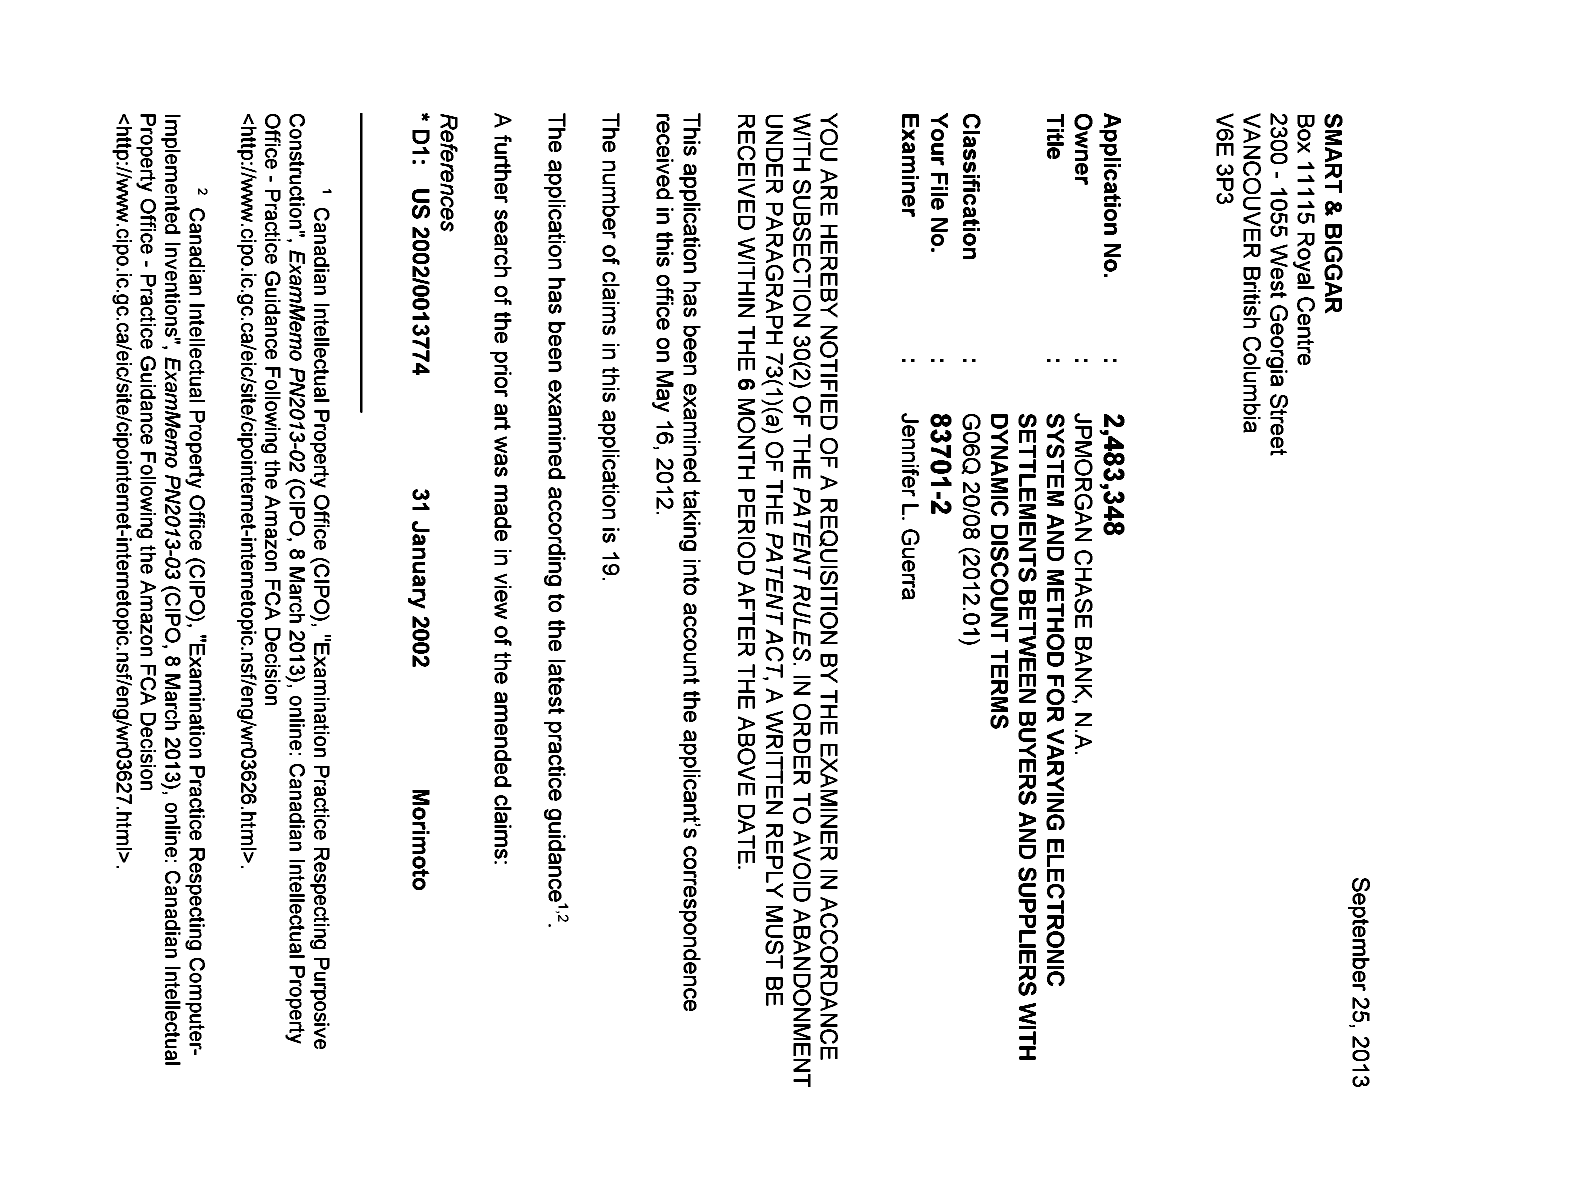 Document de brevet canadien 2483348. Poursuite-Amendment 20130925. Image 1 de 4